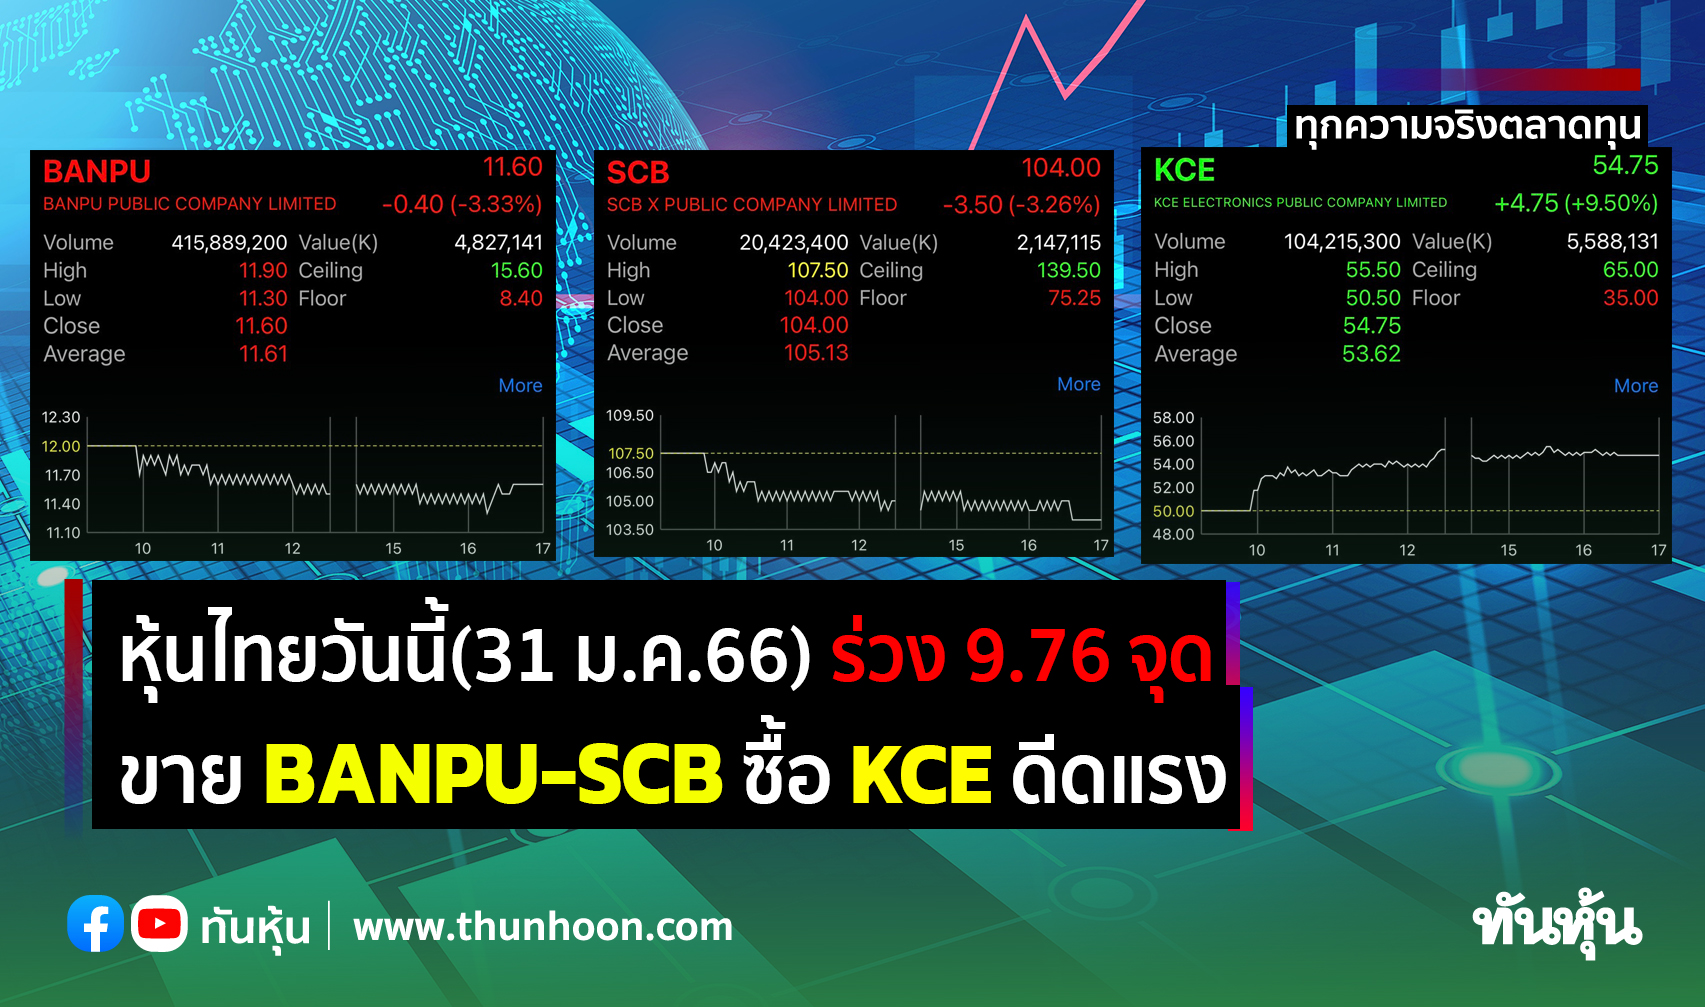 หุ้นไทยวันนี้(31 ม.ค.66) ร่วง 9.76 จุด ขาย BANPU-SCB ซื้อ KCE ดีดแรง